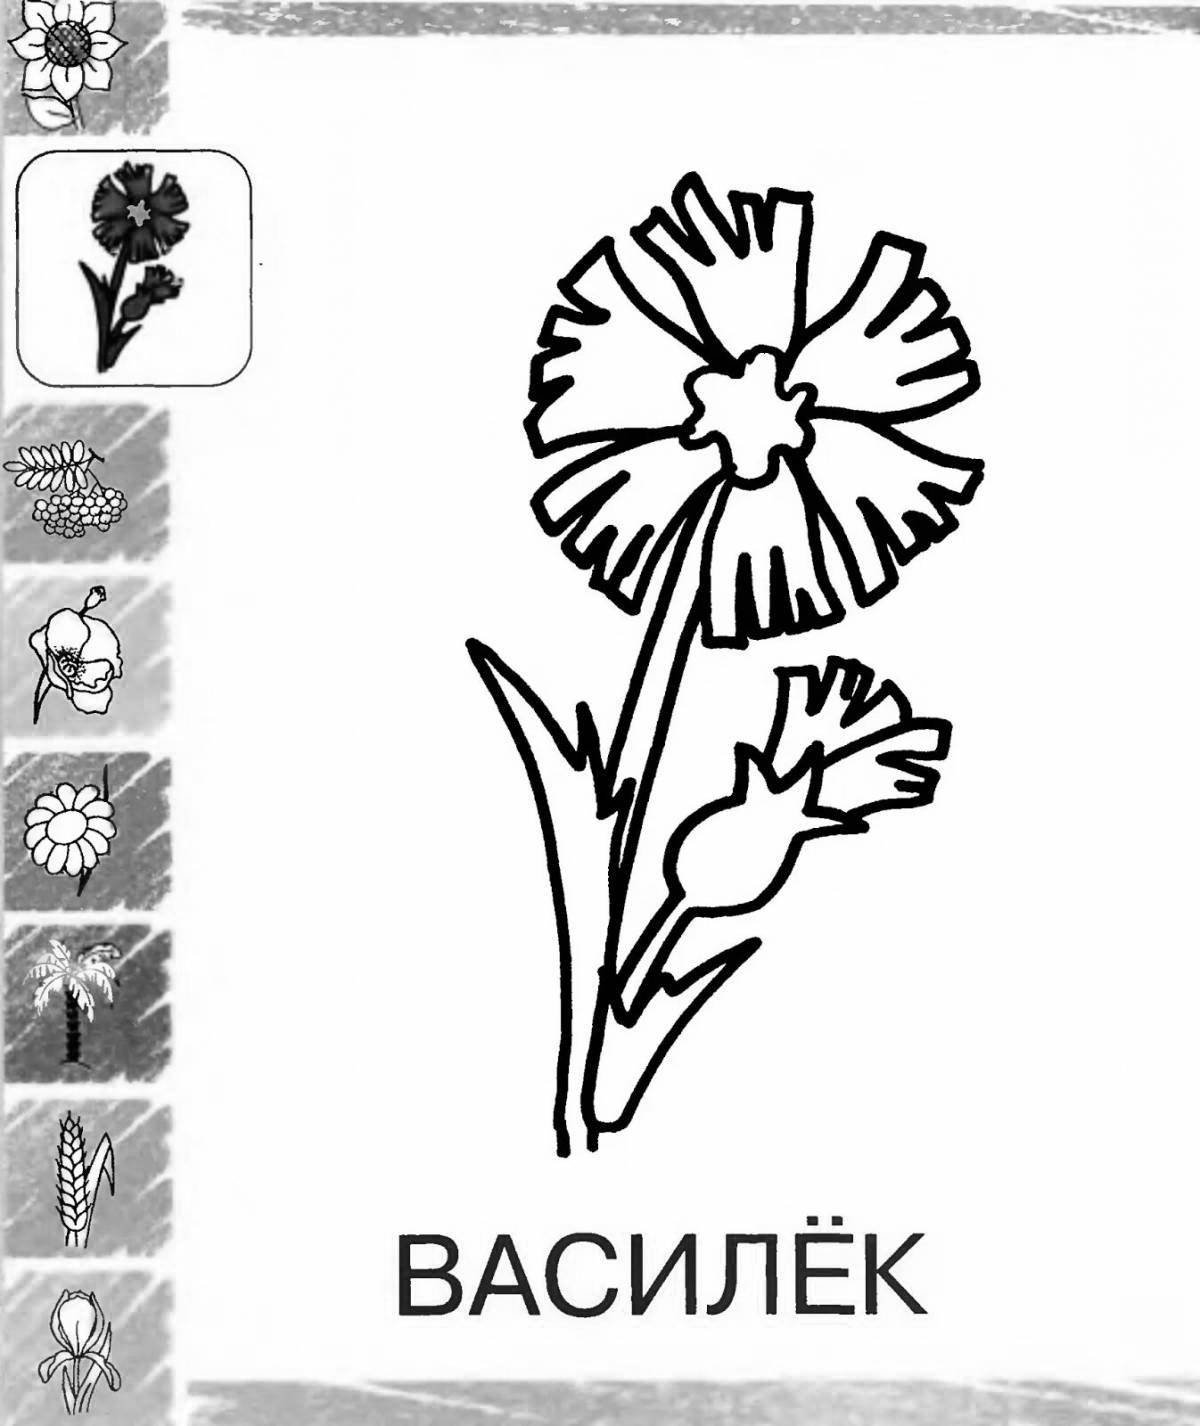 Adorable symbols of belarus for kids